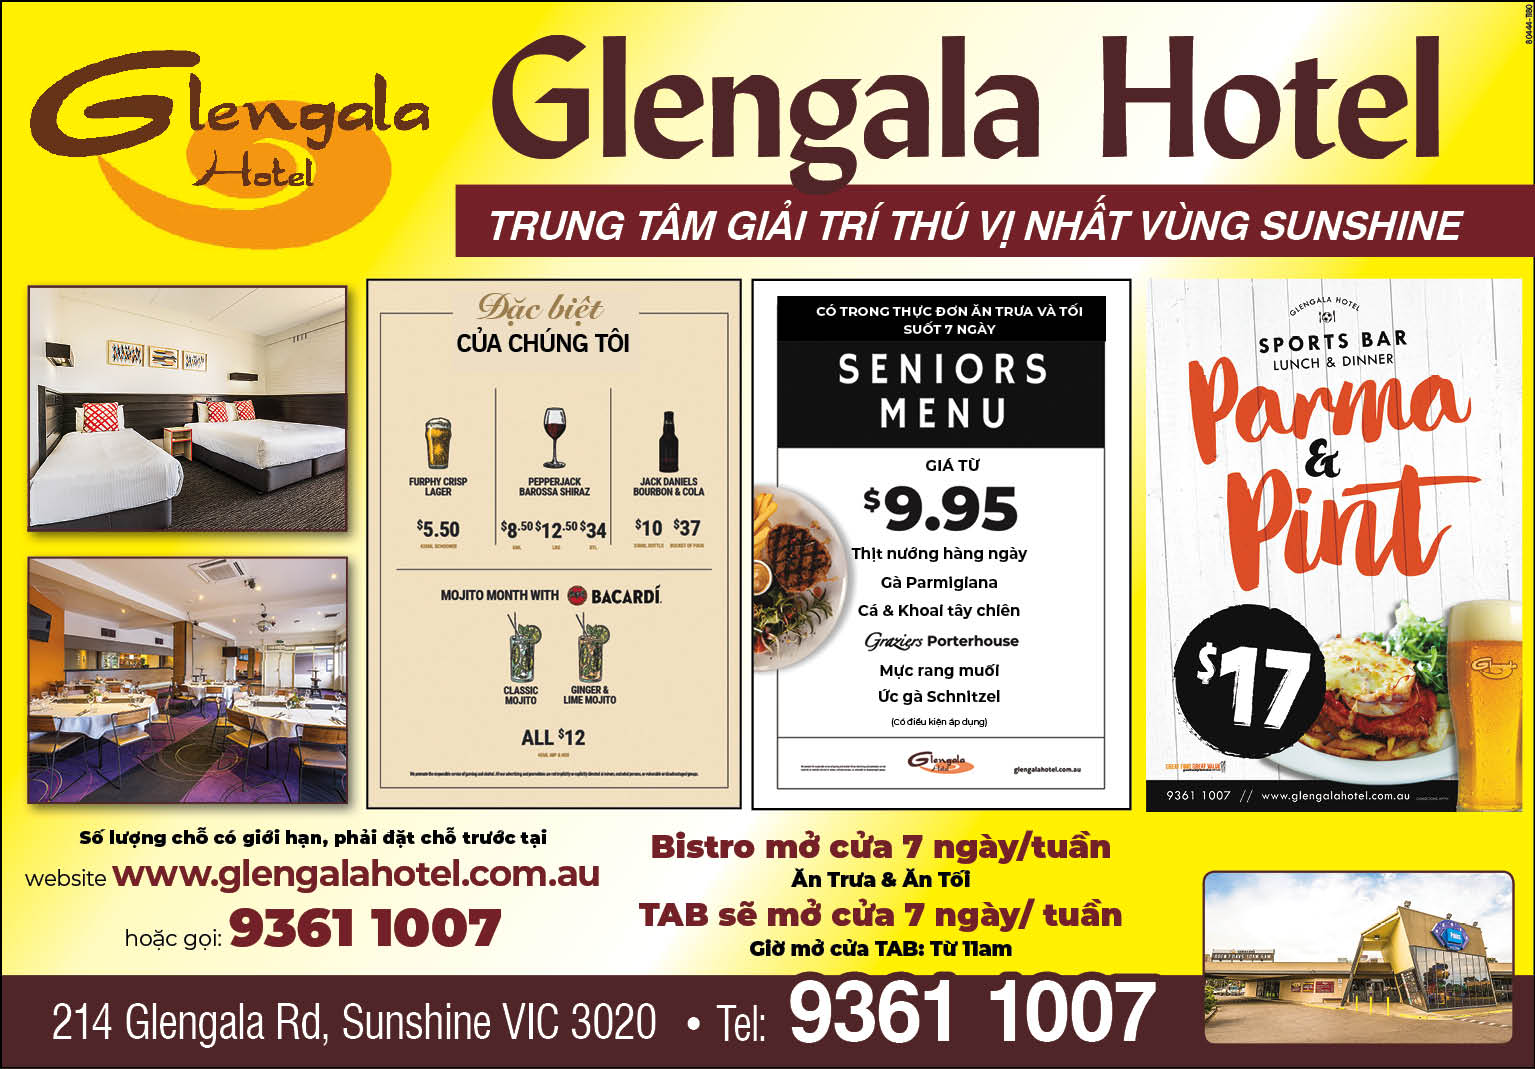 Glengala Hotel